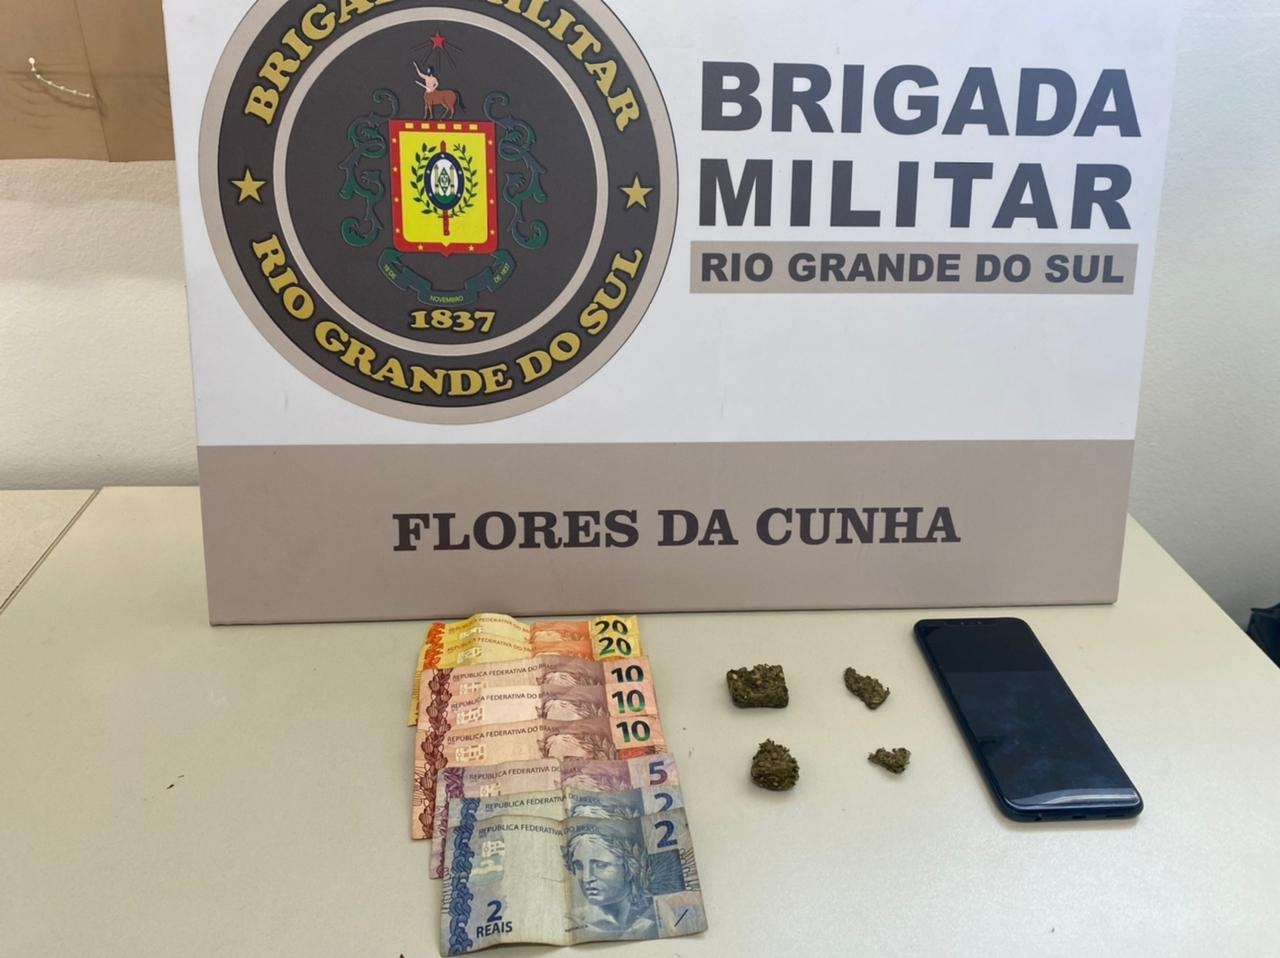  - Brigada Militar/Divulgação